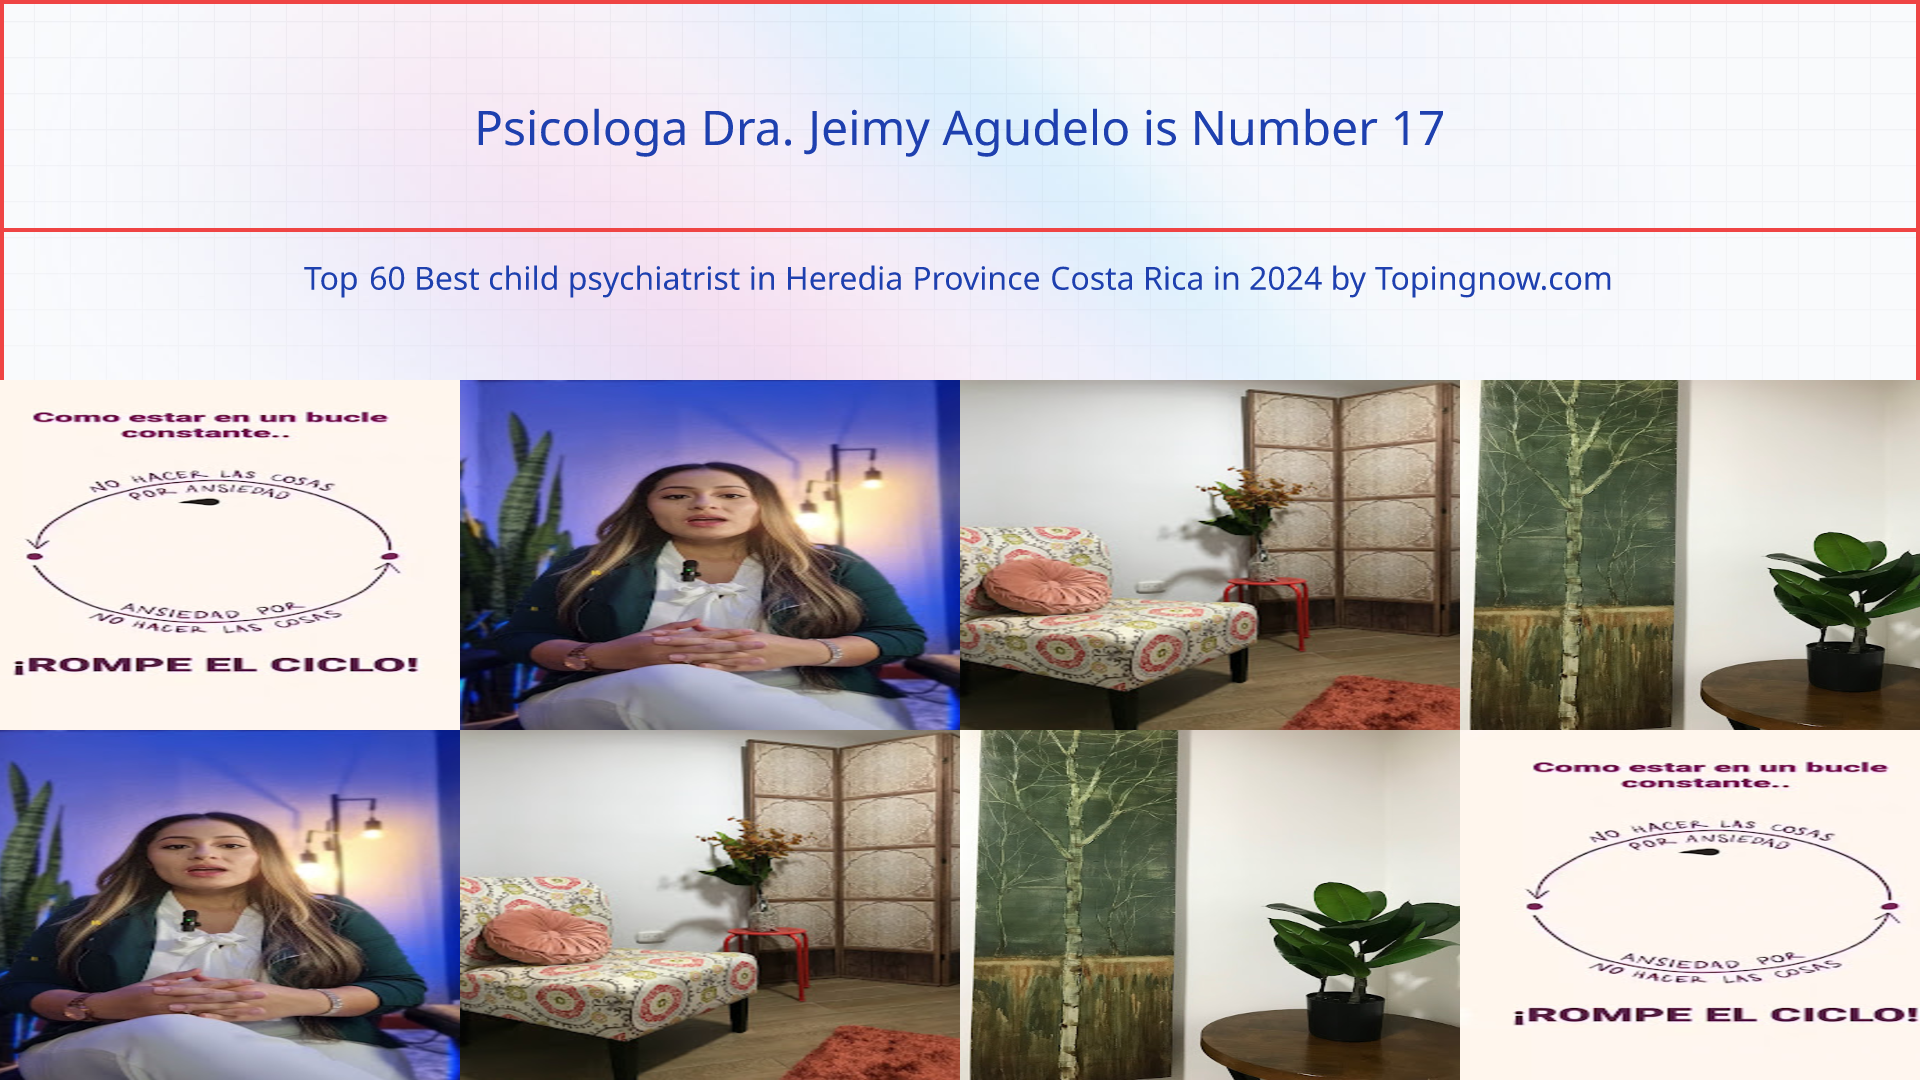 Psicologa Dra. Jeimy Agudelo: Top 60 Best child psychiatrist in Heredia Province Costa Rica in 2024